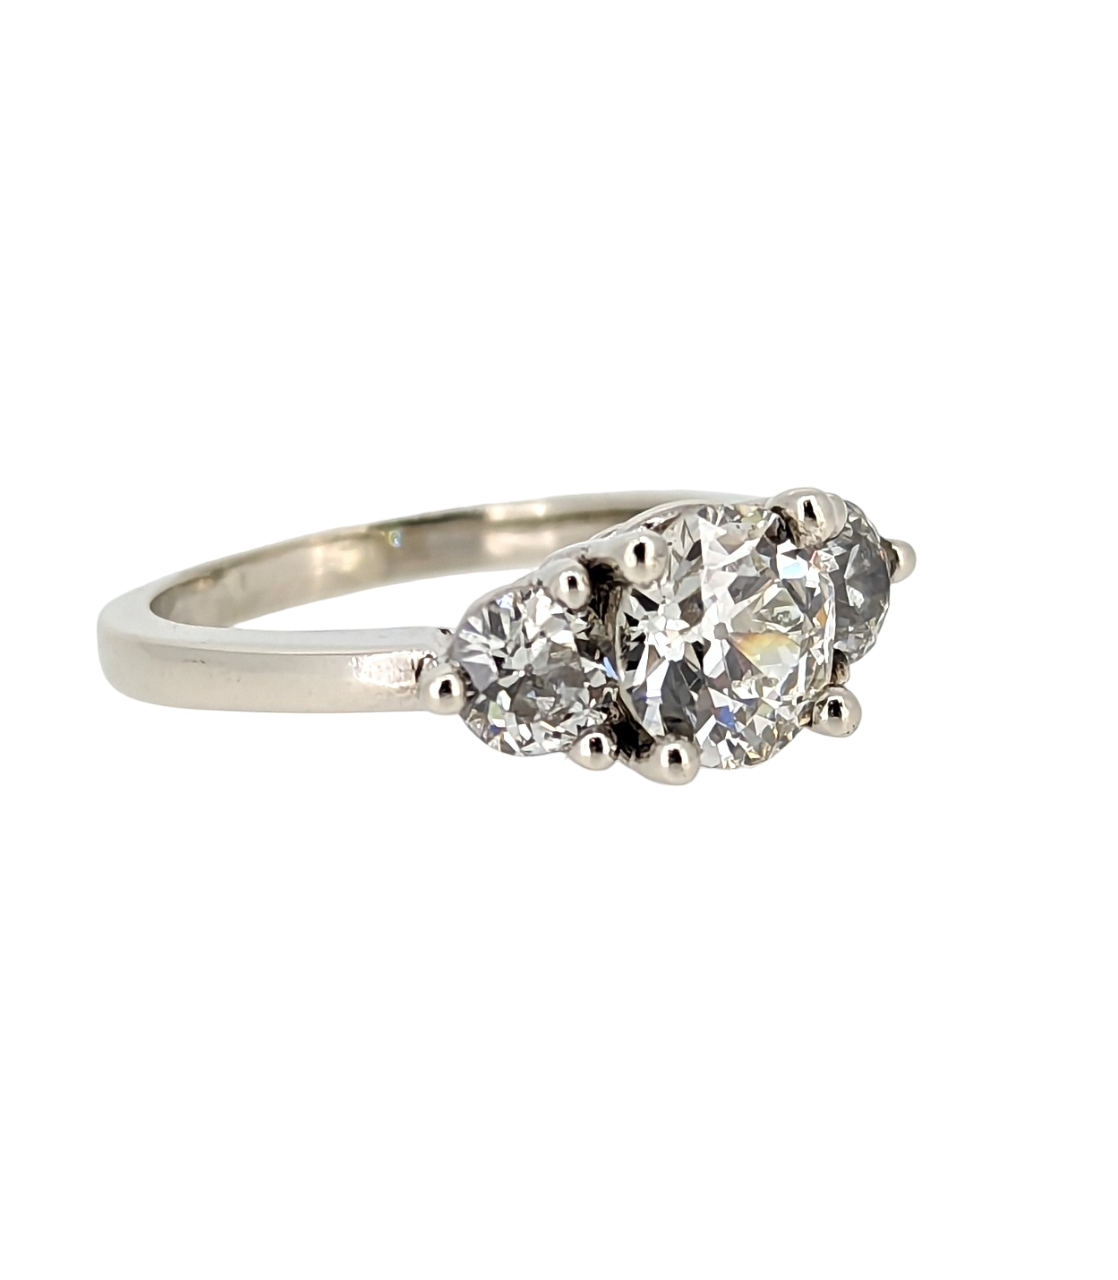 Vintage 1.60 Carat Old European Cut Diamond Engagement Ring 14K White Gold